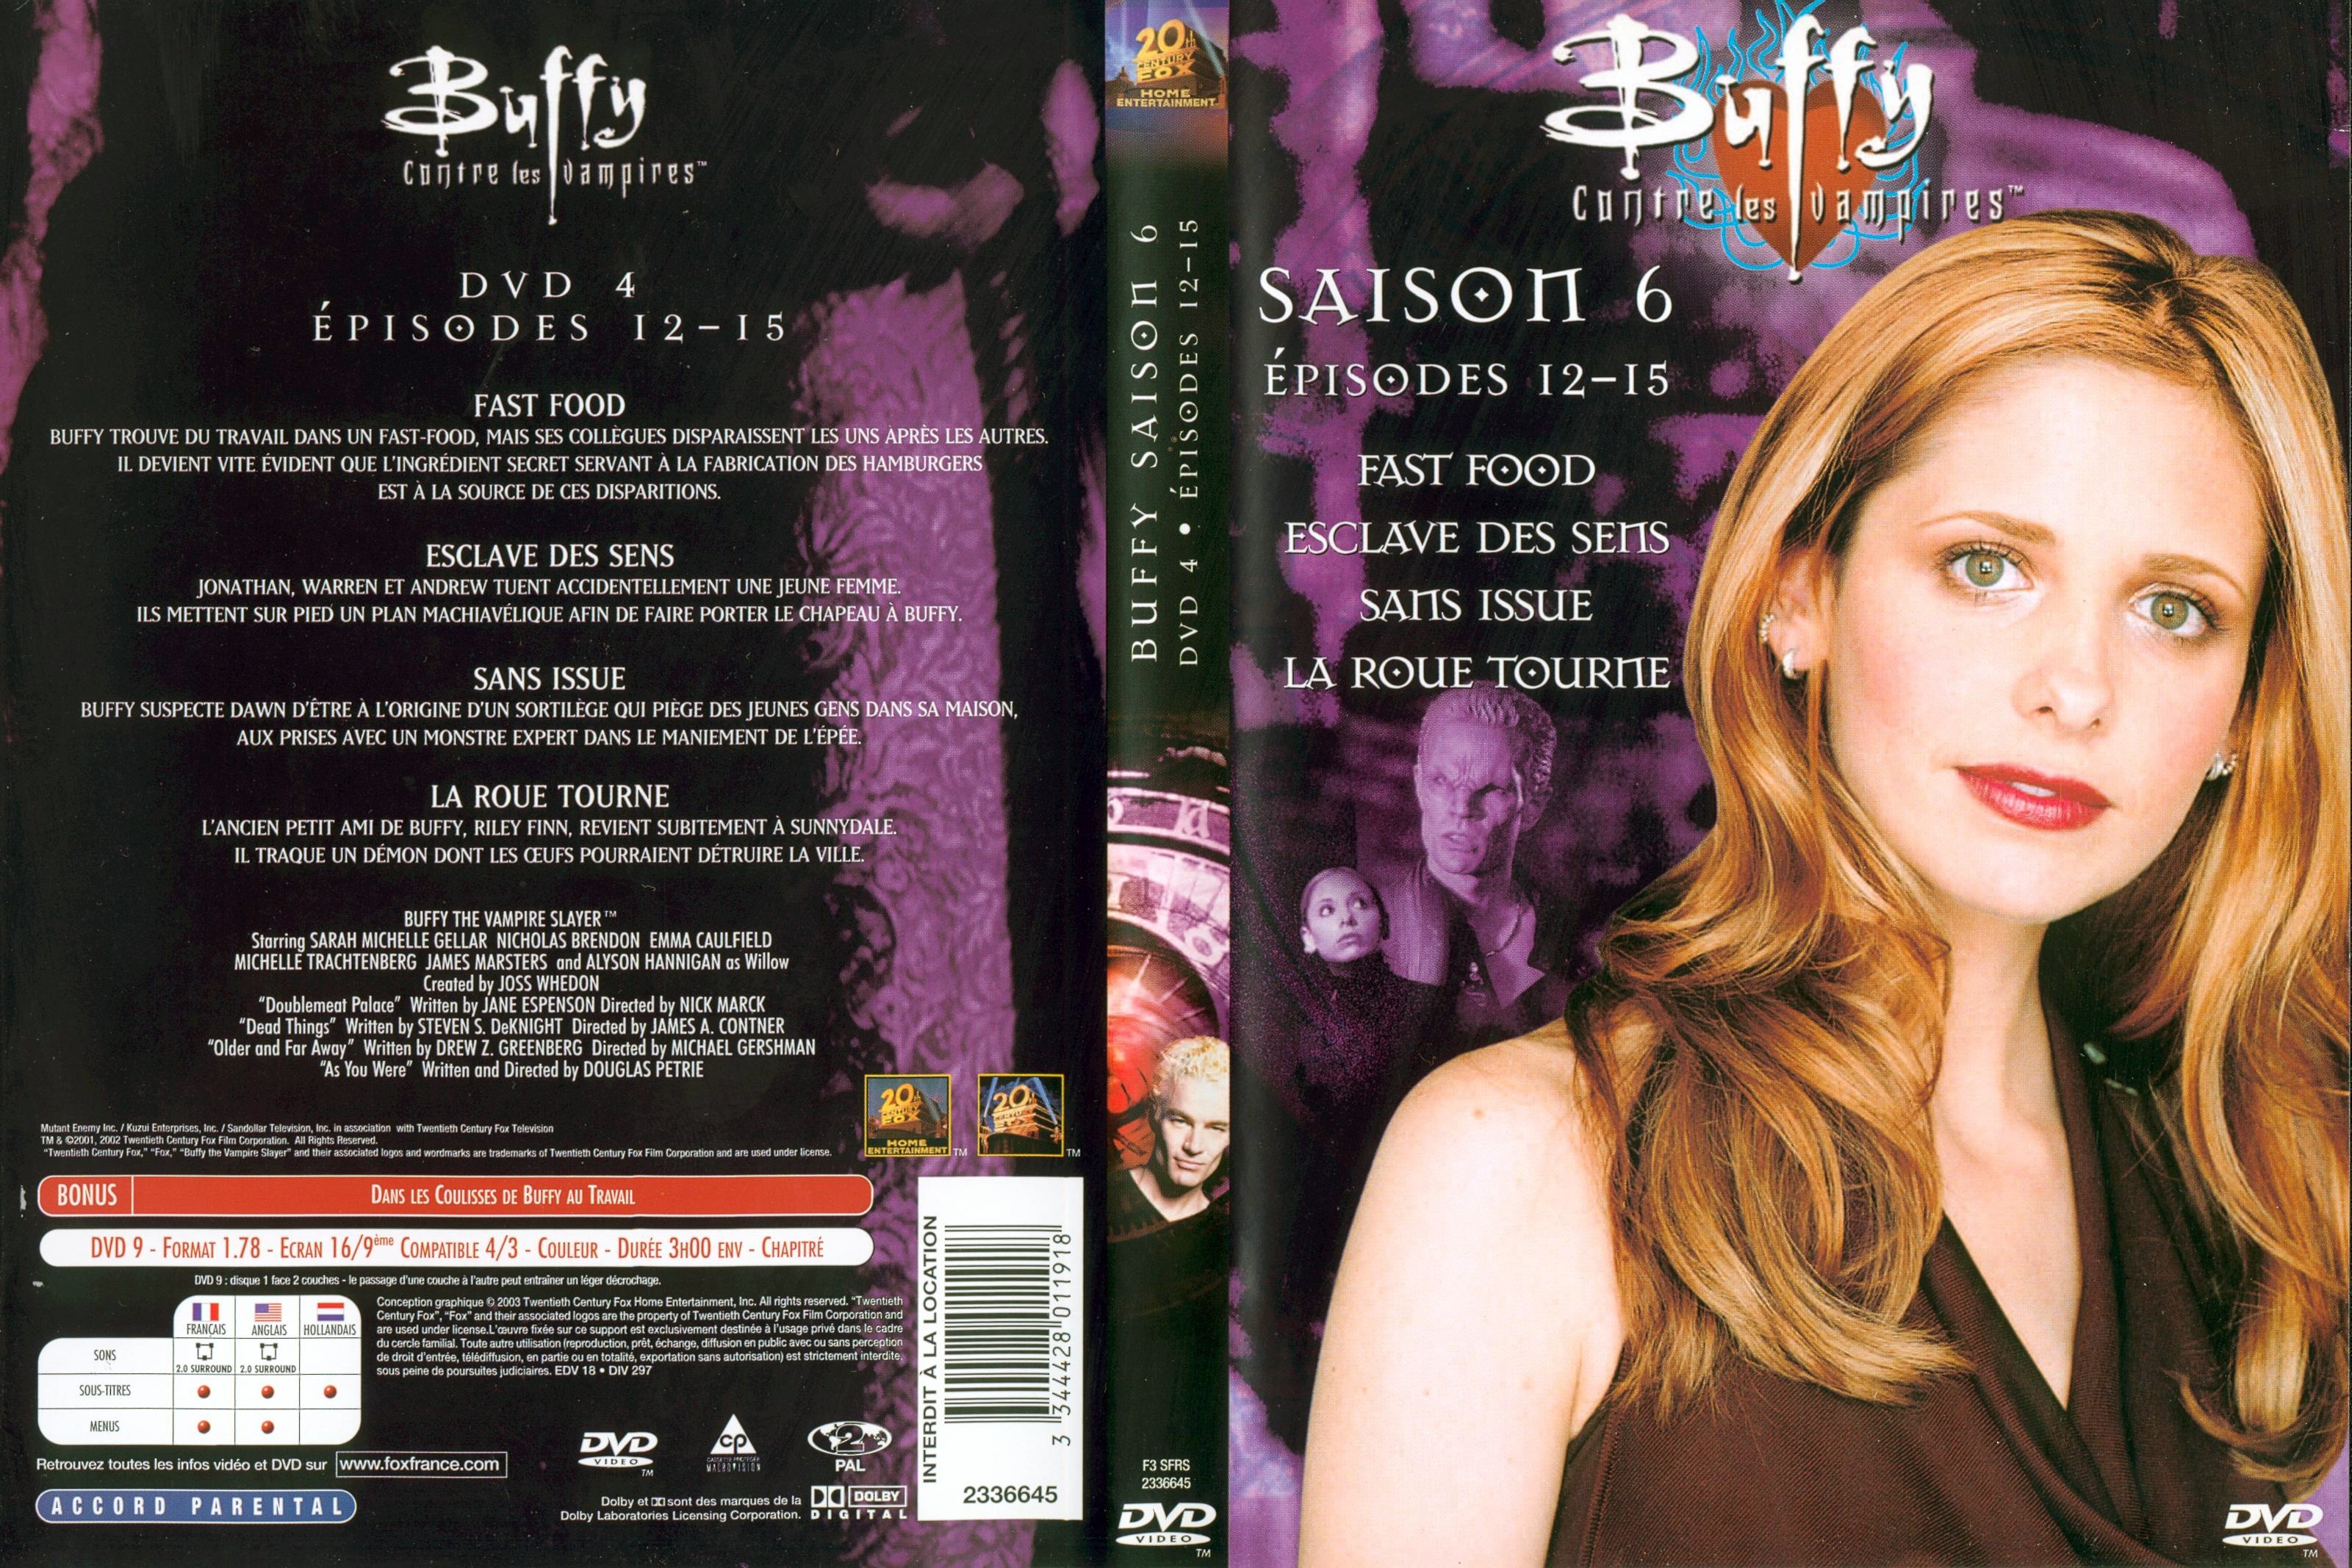 Jaquette DVD Buffy contre les vampires Saison 6 DVD 4